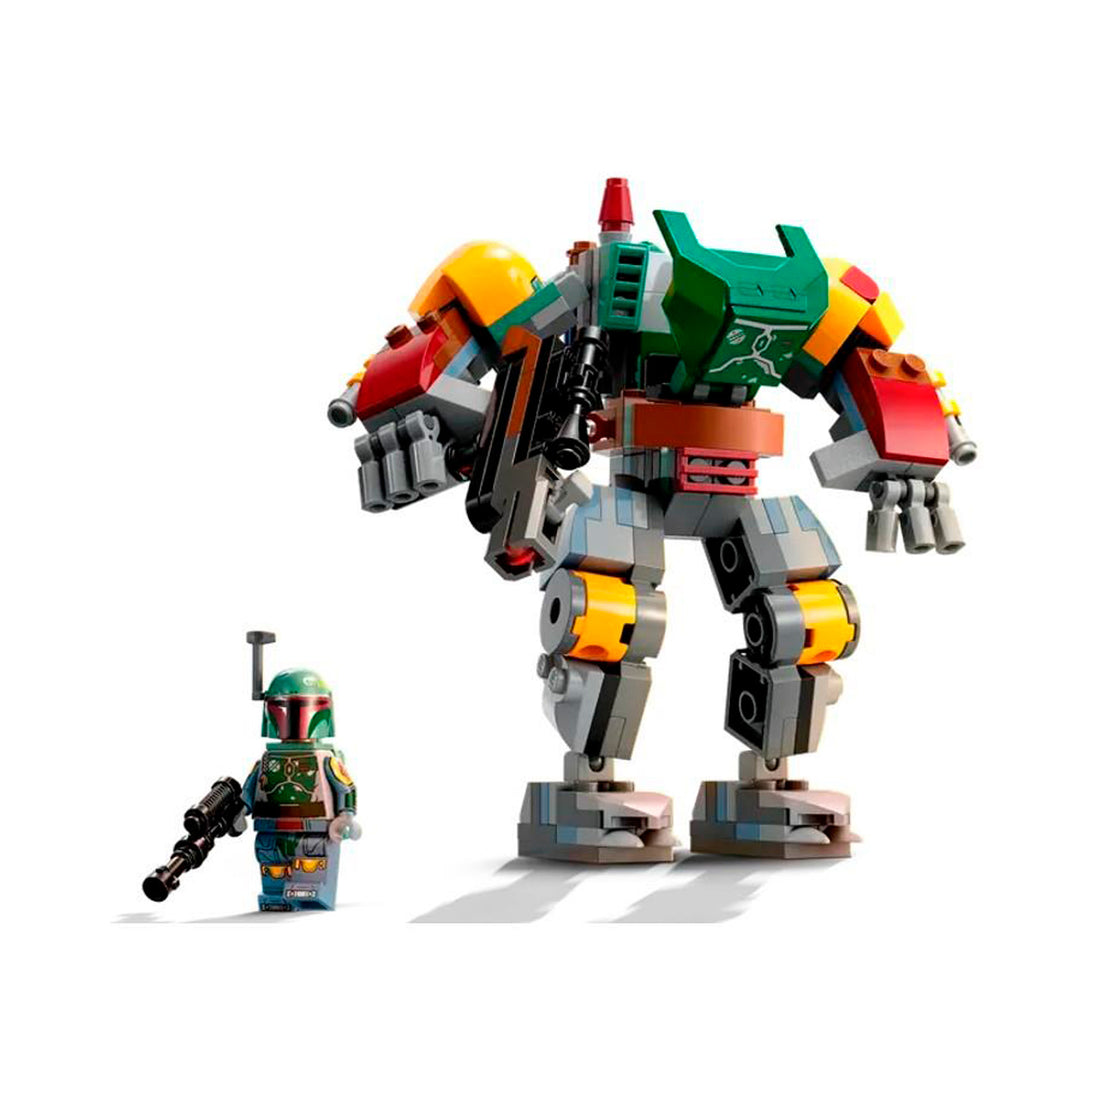 Lego Star Wars Robô do Boba Fett